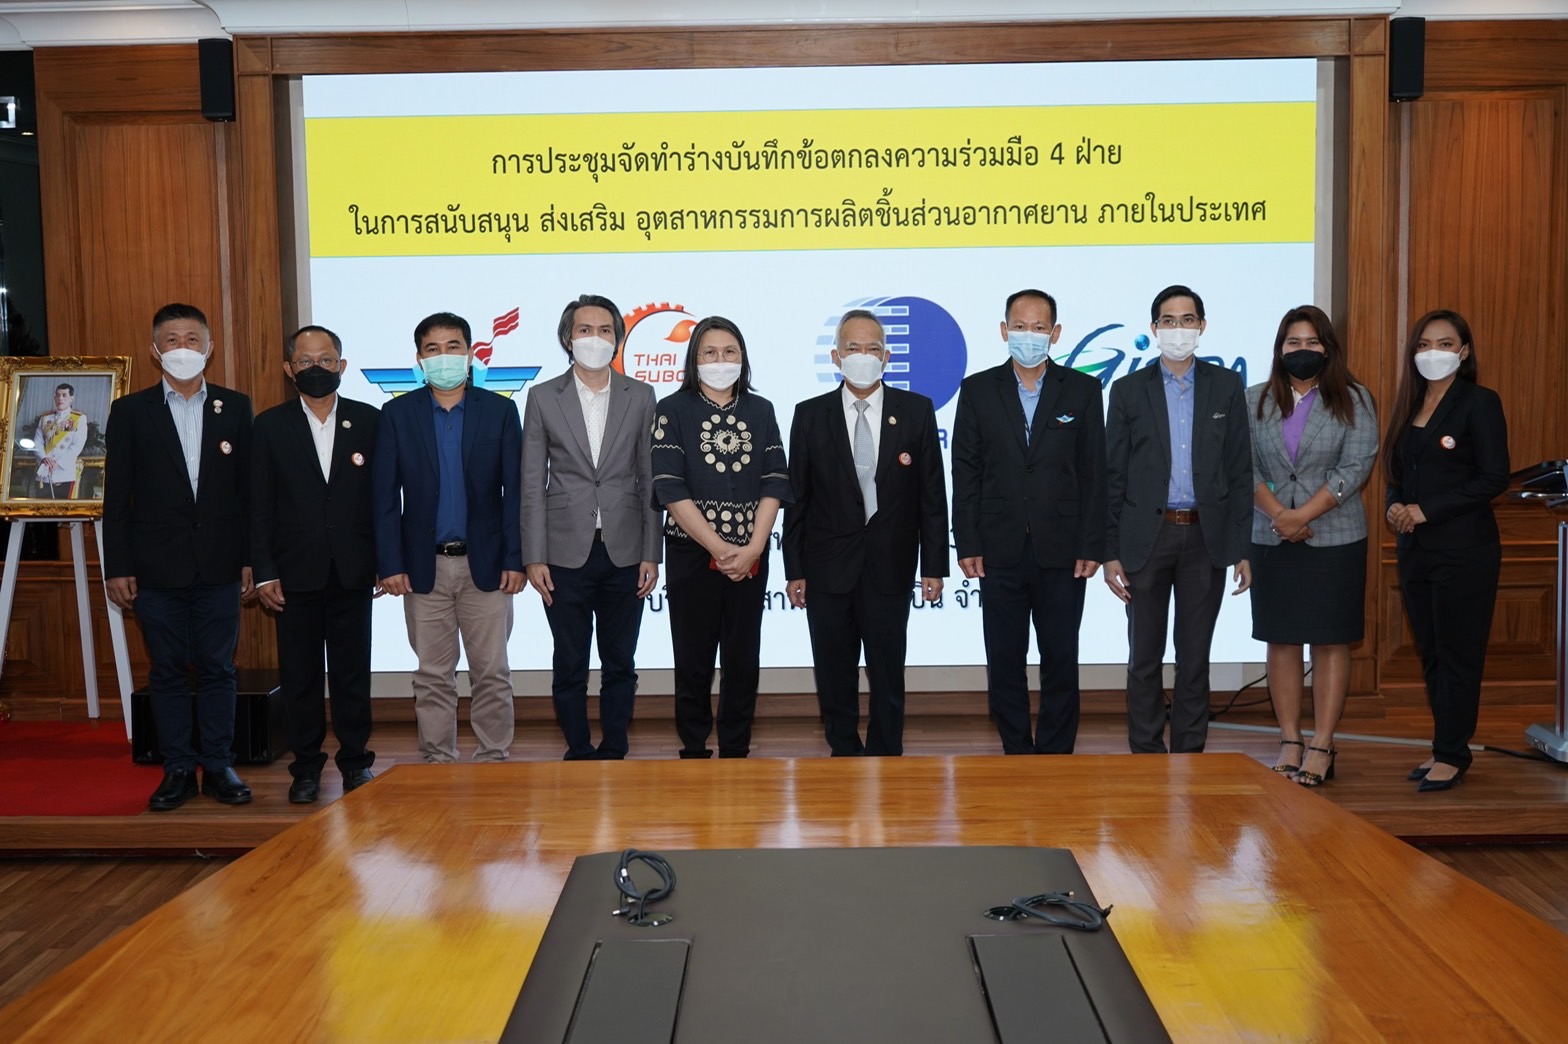 สมาคมไทยซับคอนร่วมประชุมการจัดทำร่างบันทึกข้อตกลงความร่วมมือ 4 ฝ่าย เพื่อส่งเสริมพัฒนาการดำเนินธุรกิจที่เกี่ยวข้องกับอุตสาหกรรมการบินของประเทศไทย